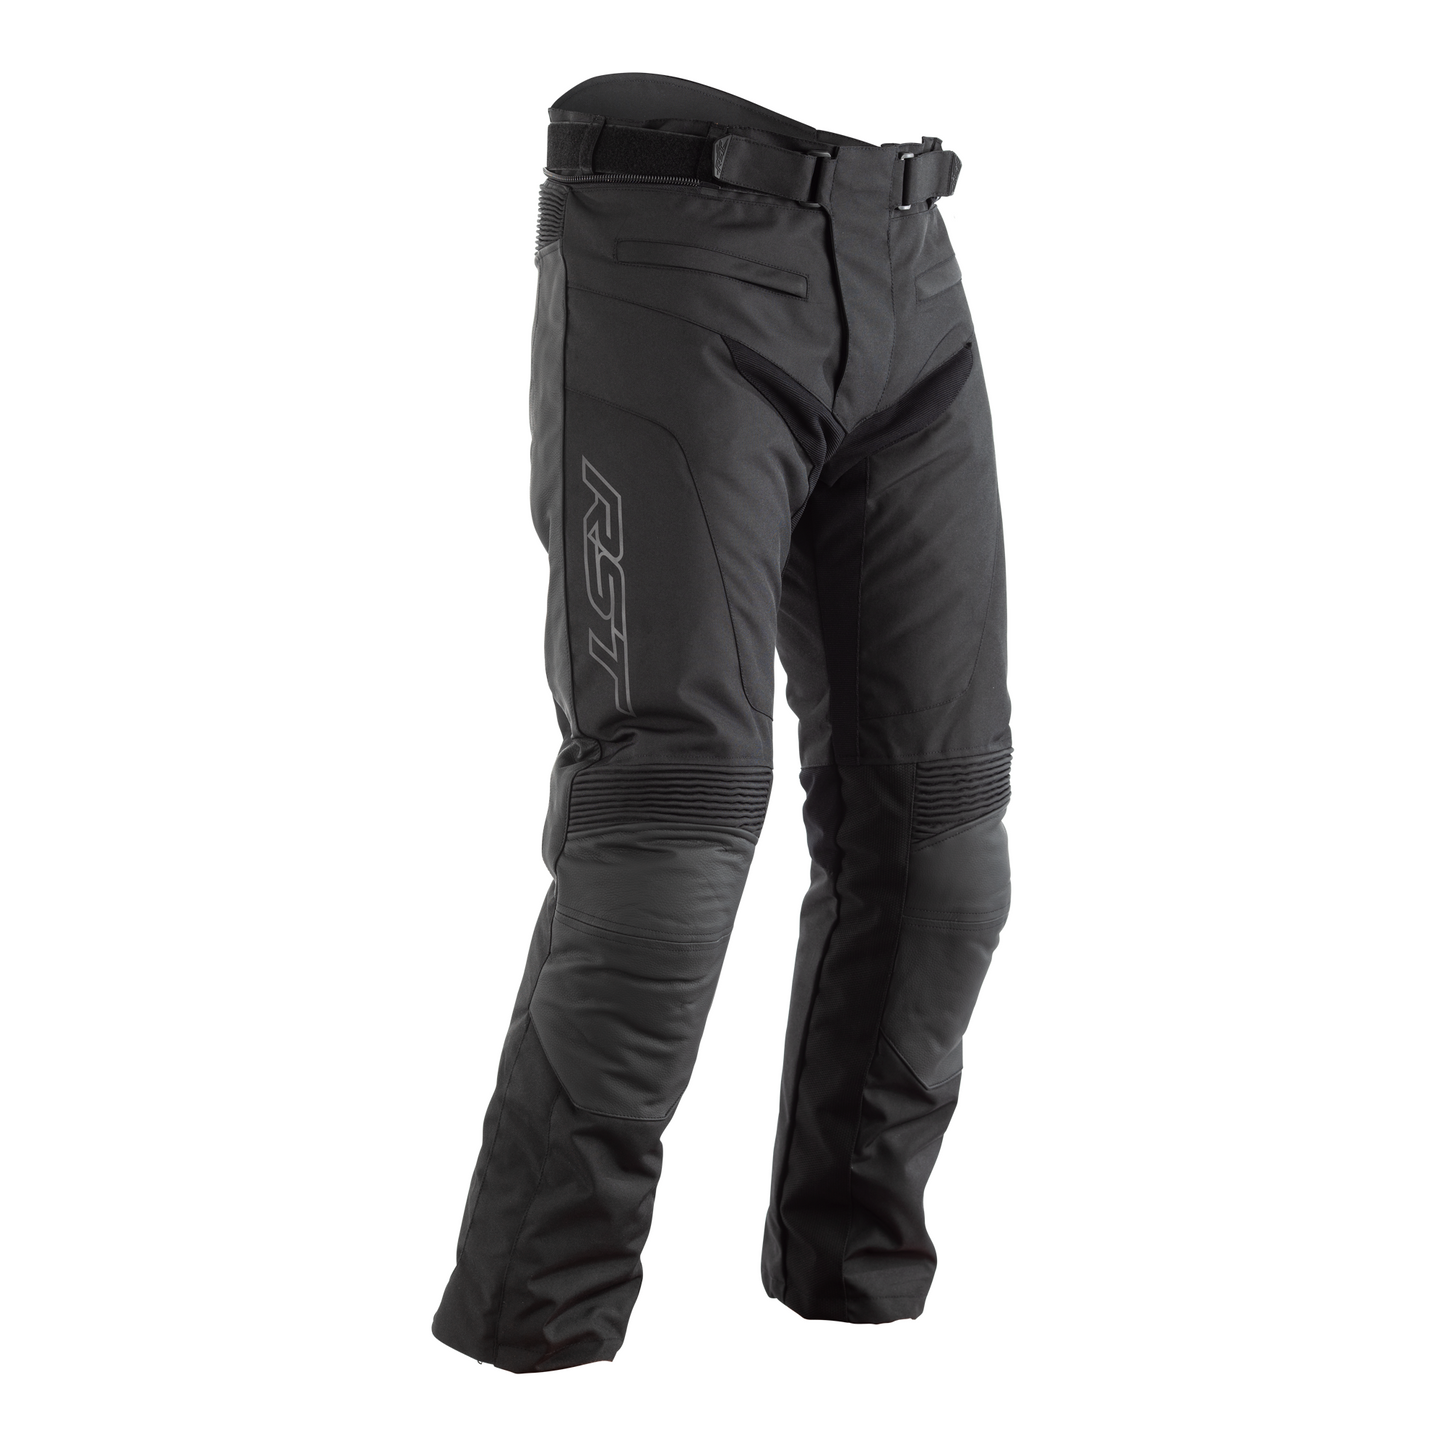 RST Syncro Plus (CE) Men's Textile Riding - Regular Length - Jeans - Black